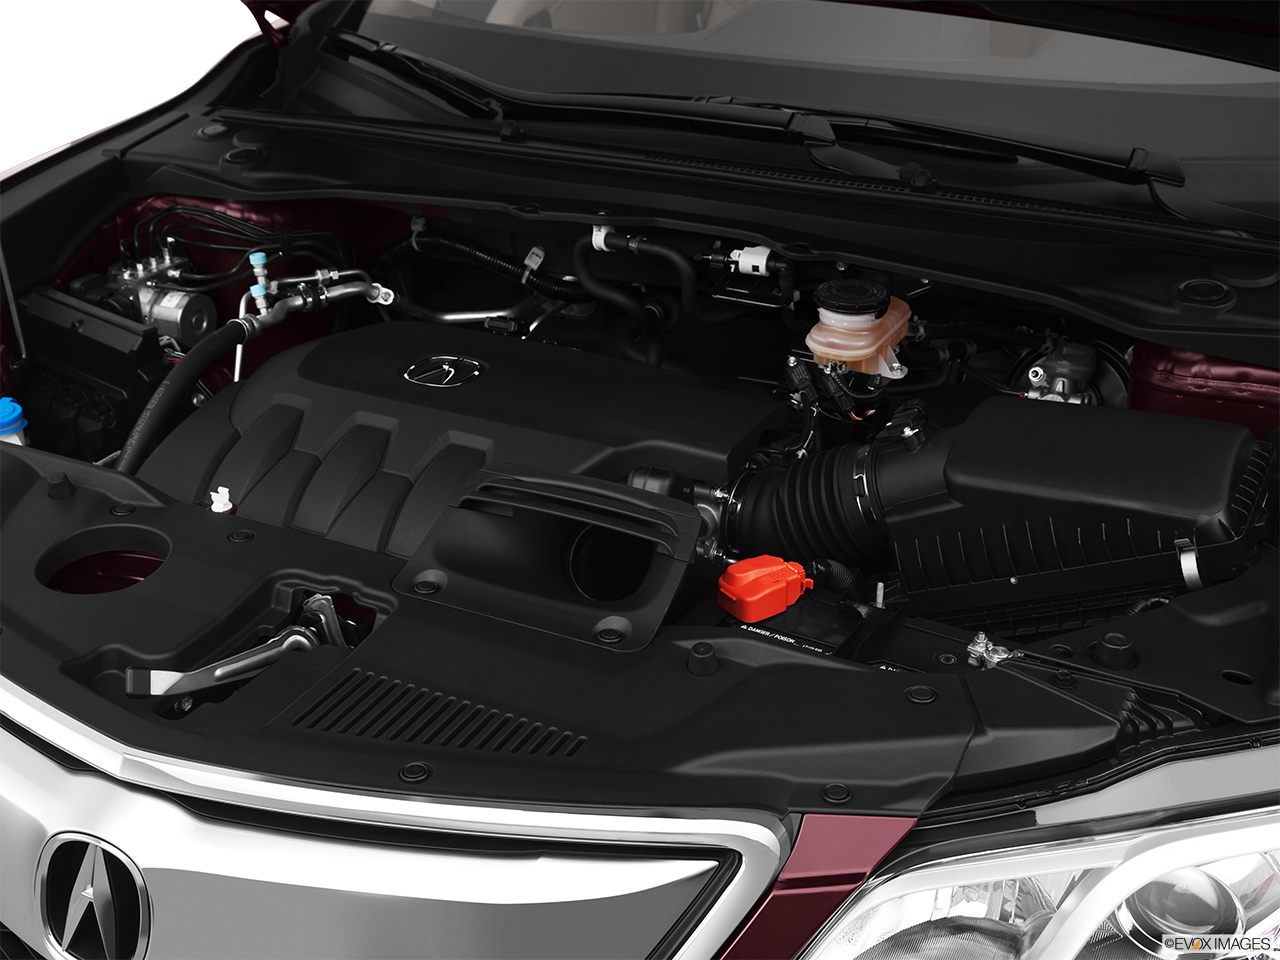 2013 Acura RDX AWD Engine. 